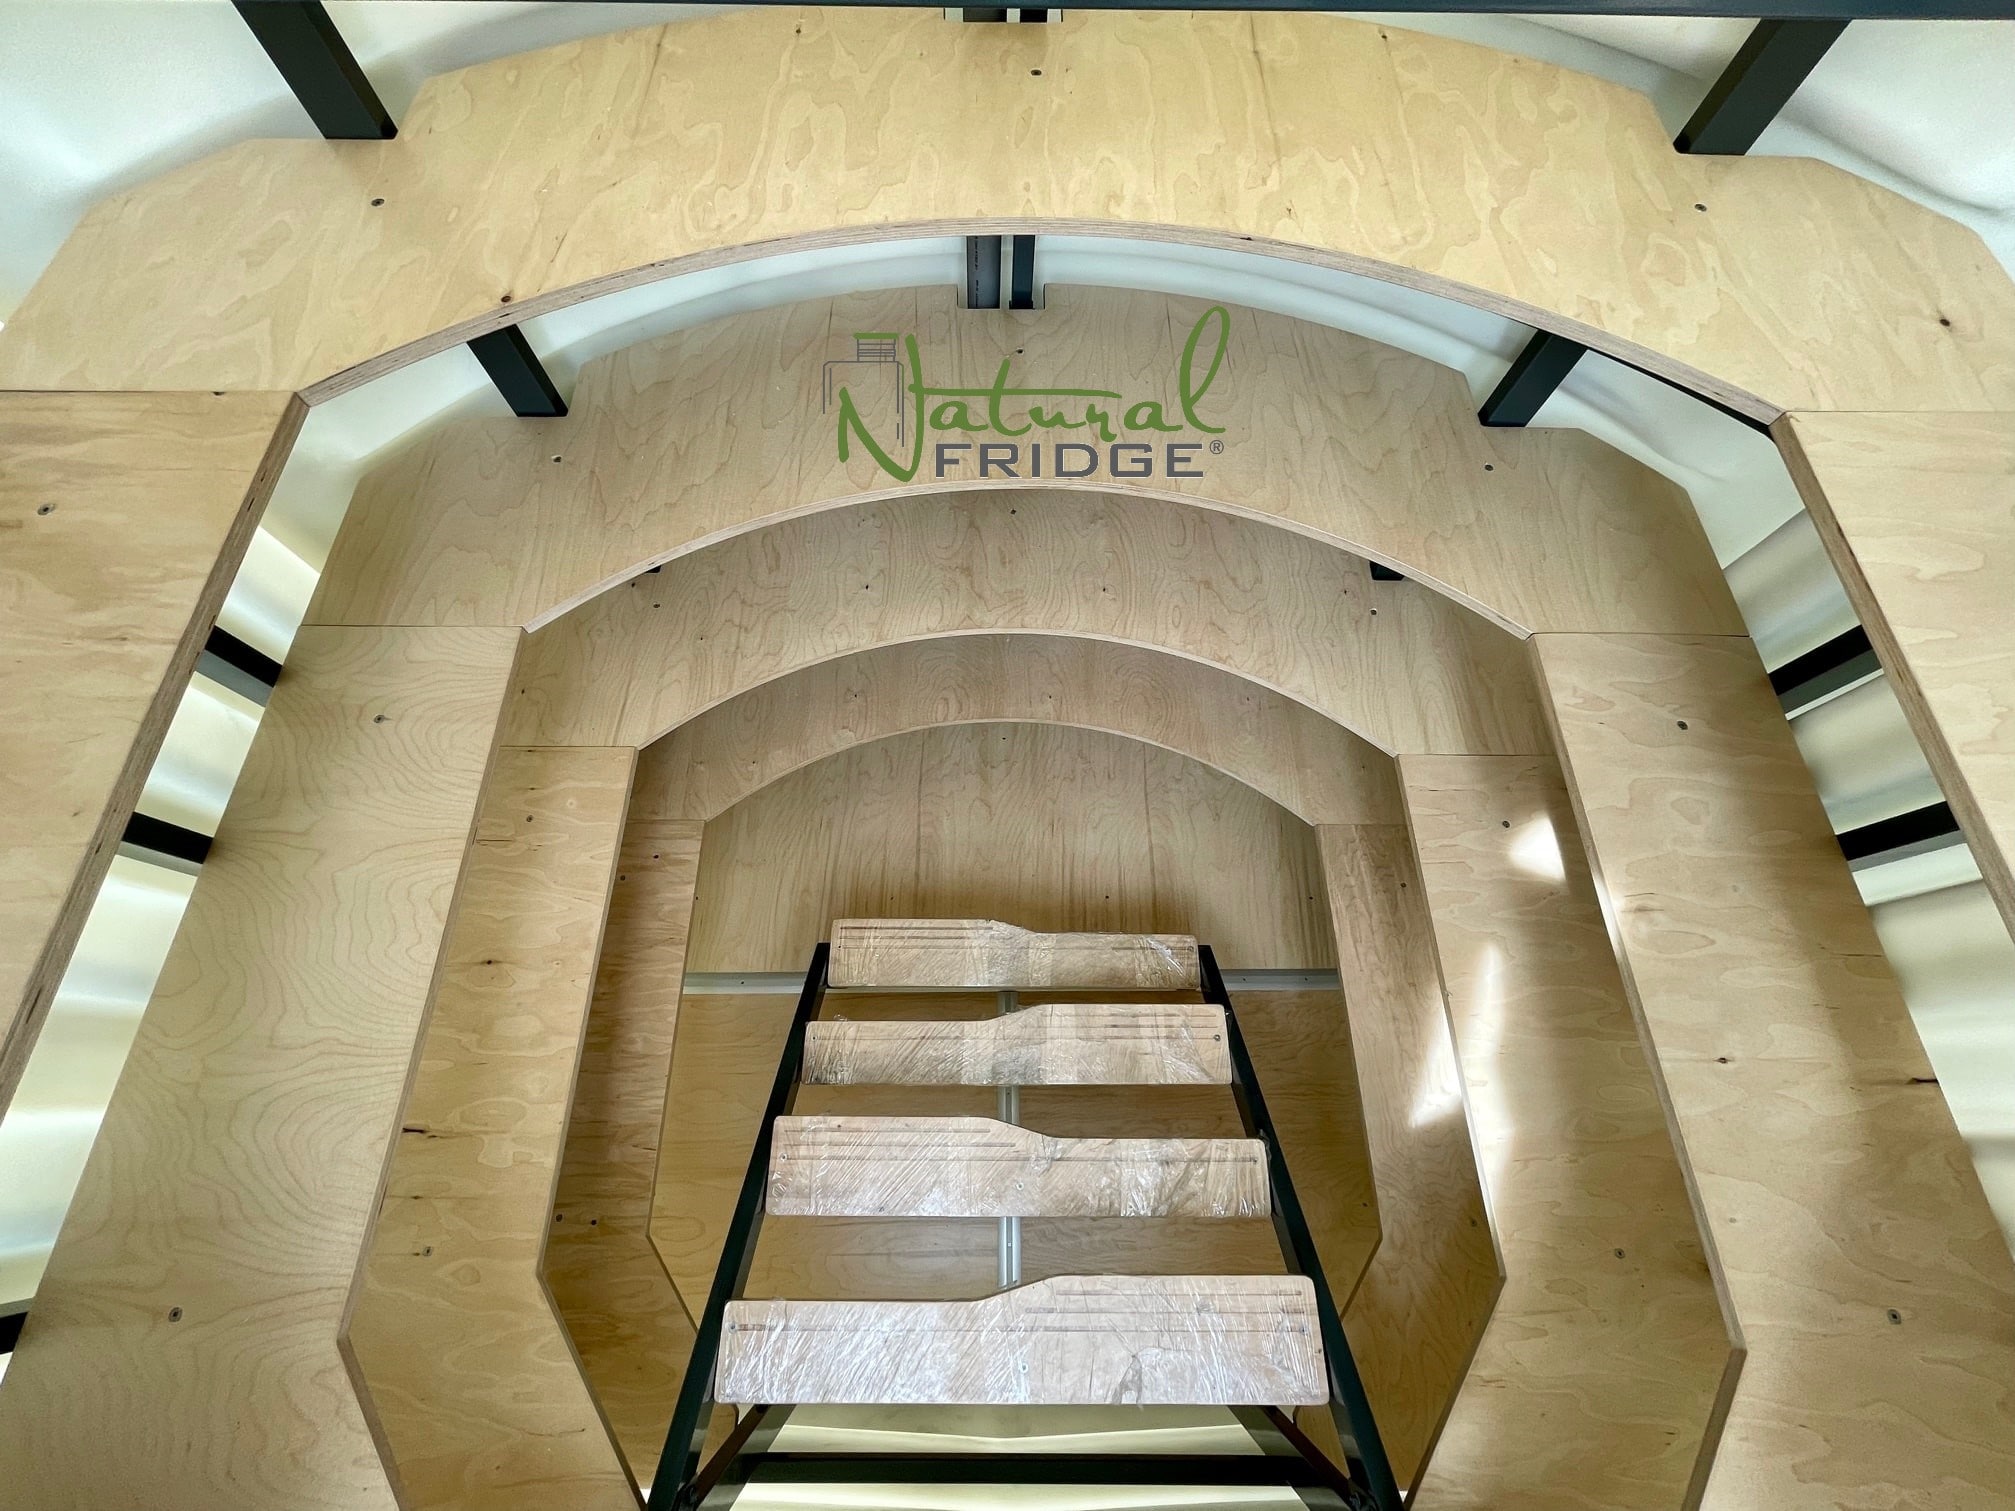 Keller aus Plastik Natural FRIDGE ® und Speisekammer absolut dicht, abmessung 2,0 m x 1,75 m mit einem abfallenden Eingang